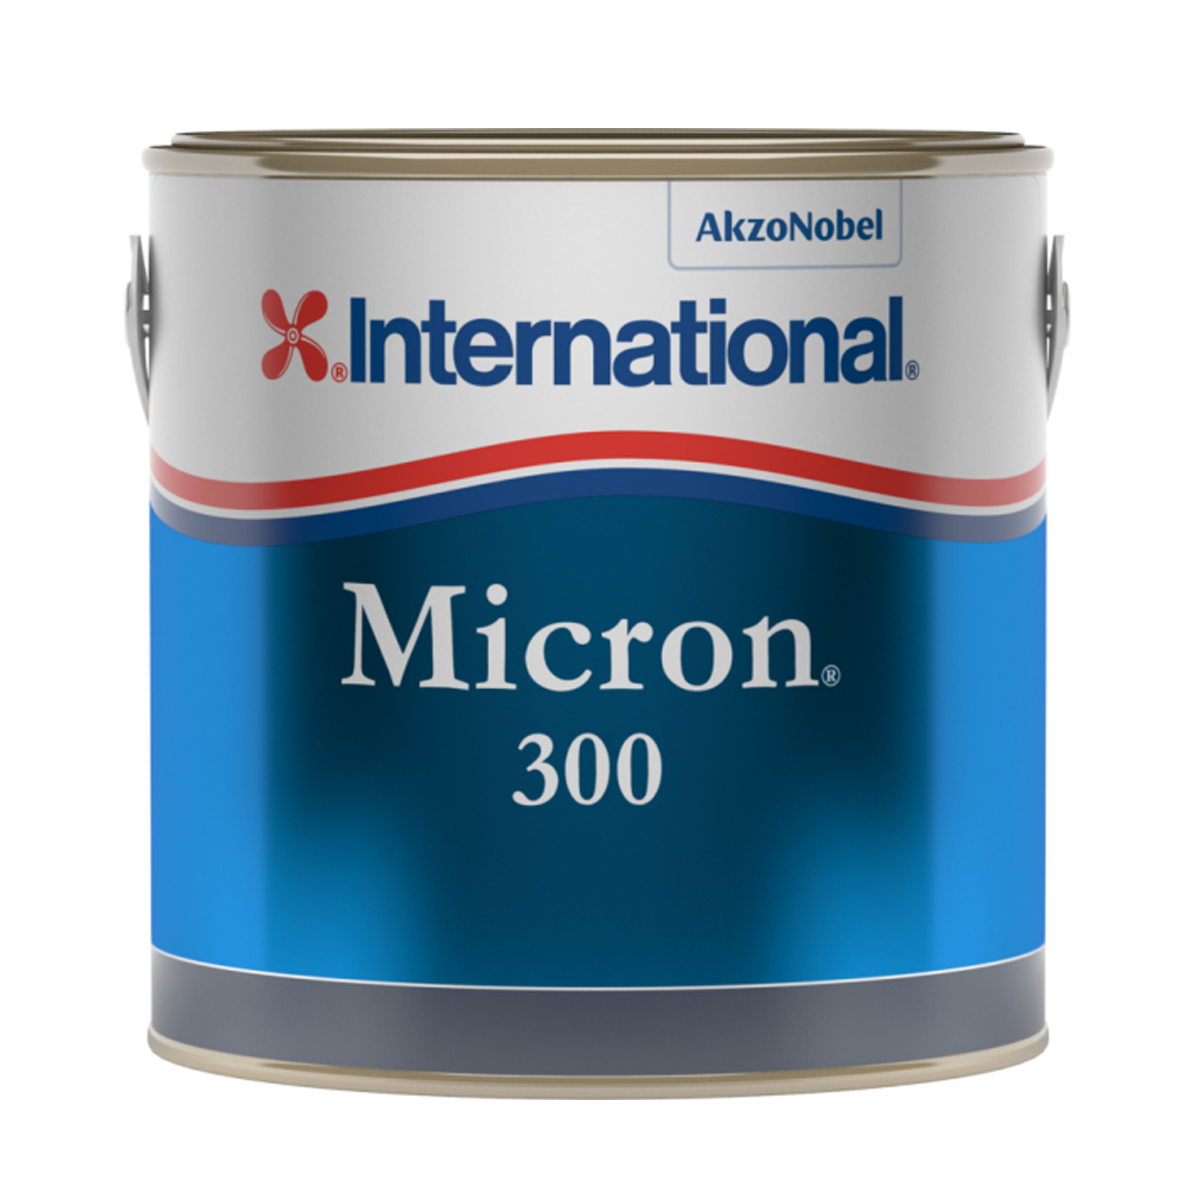 Micron 300